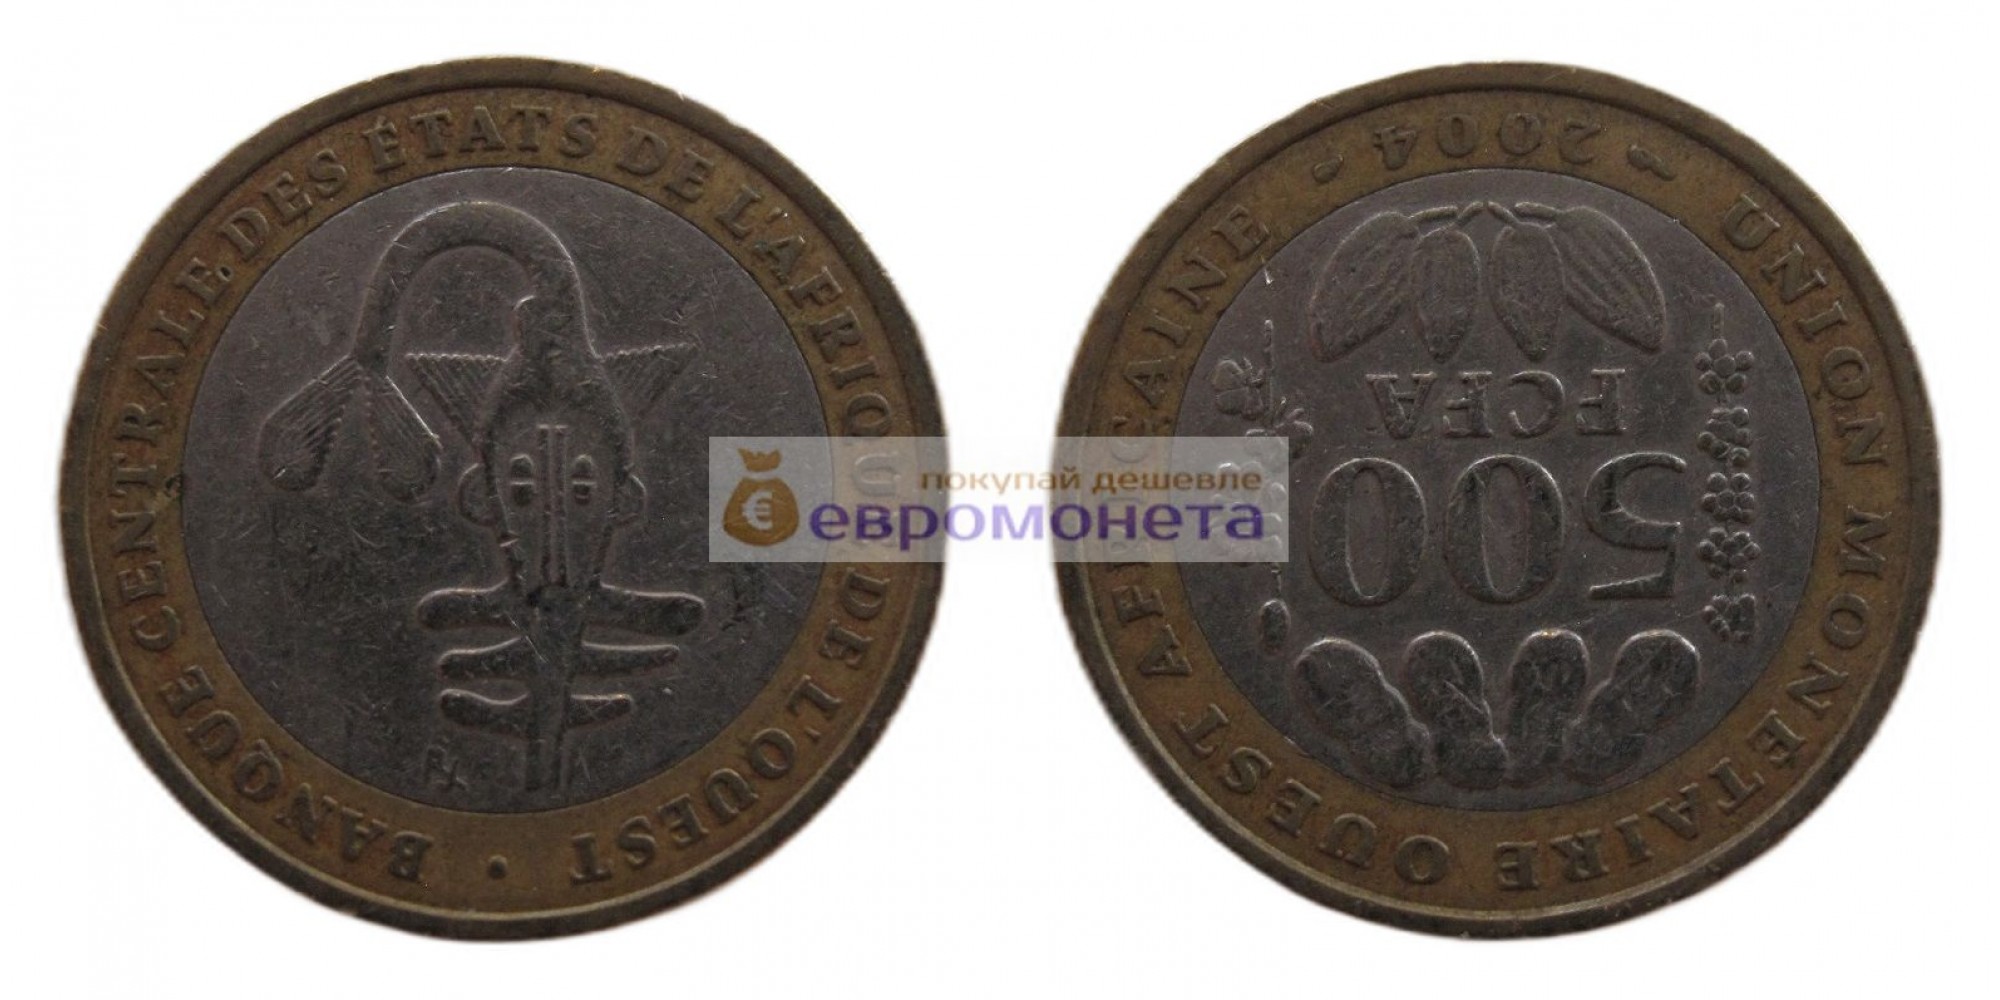 Западная Африка (BCEAO) 500 франков 2004 год